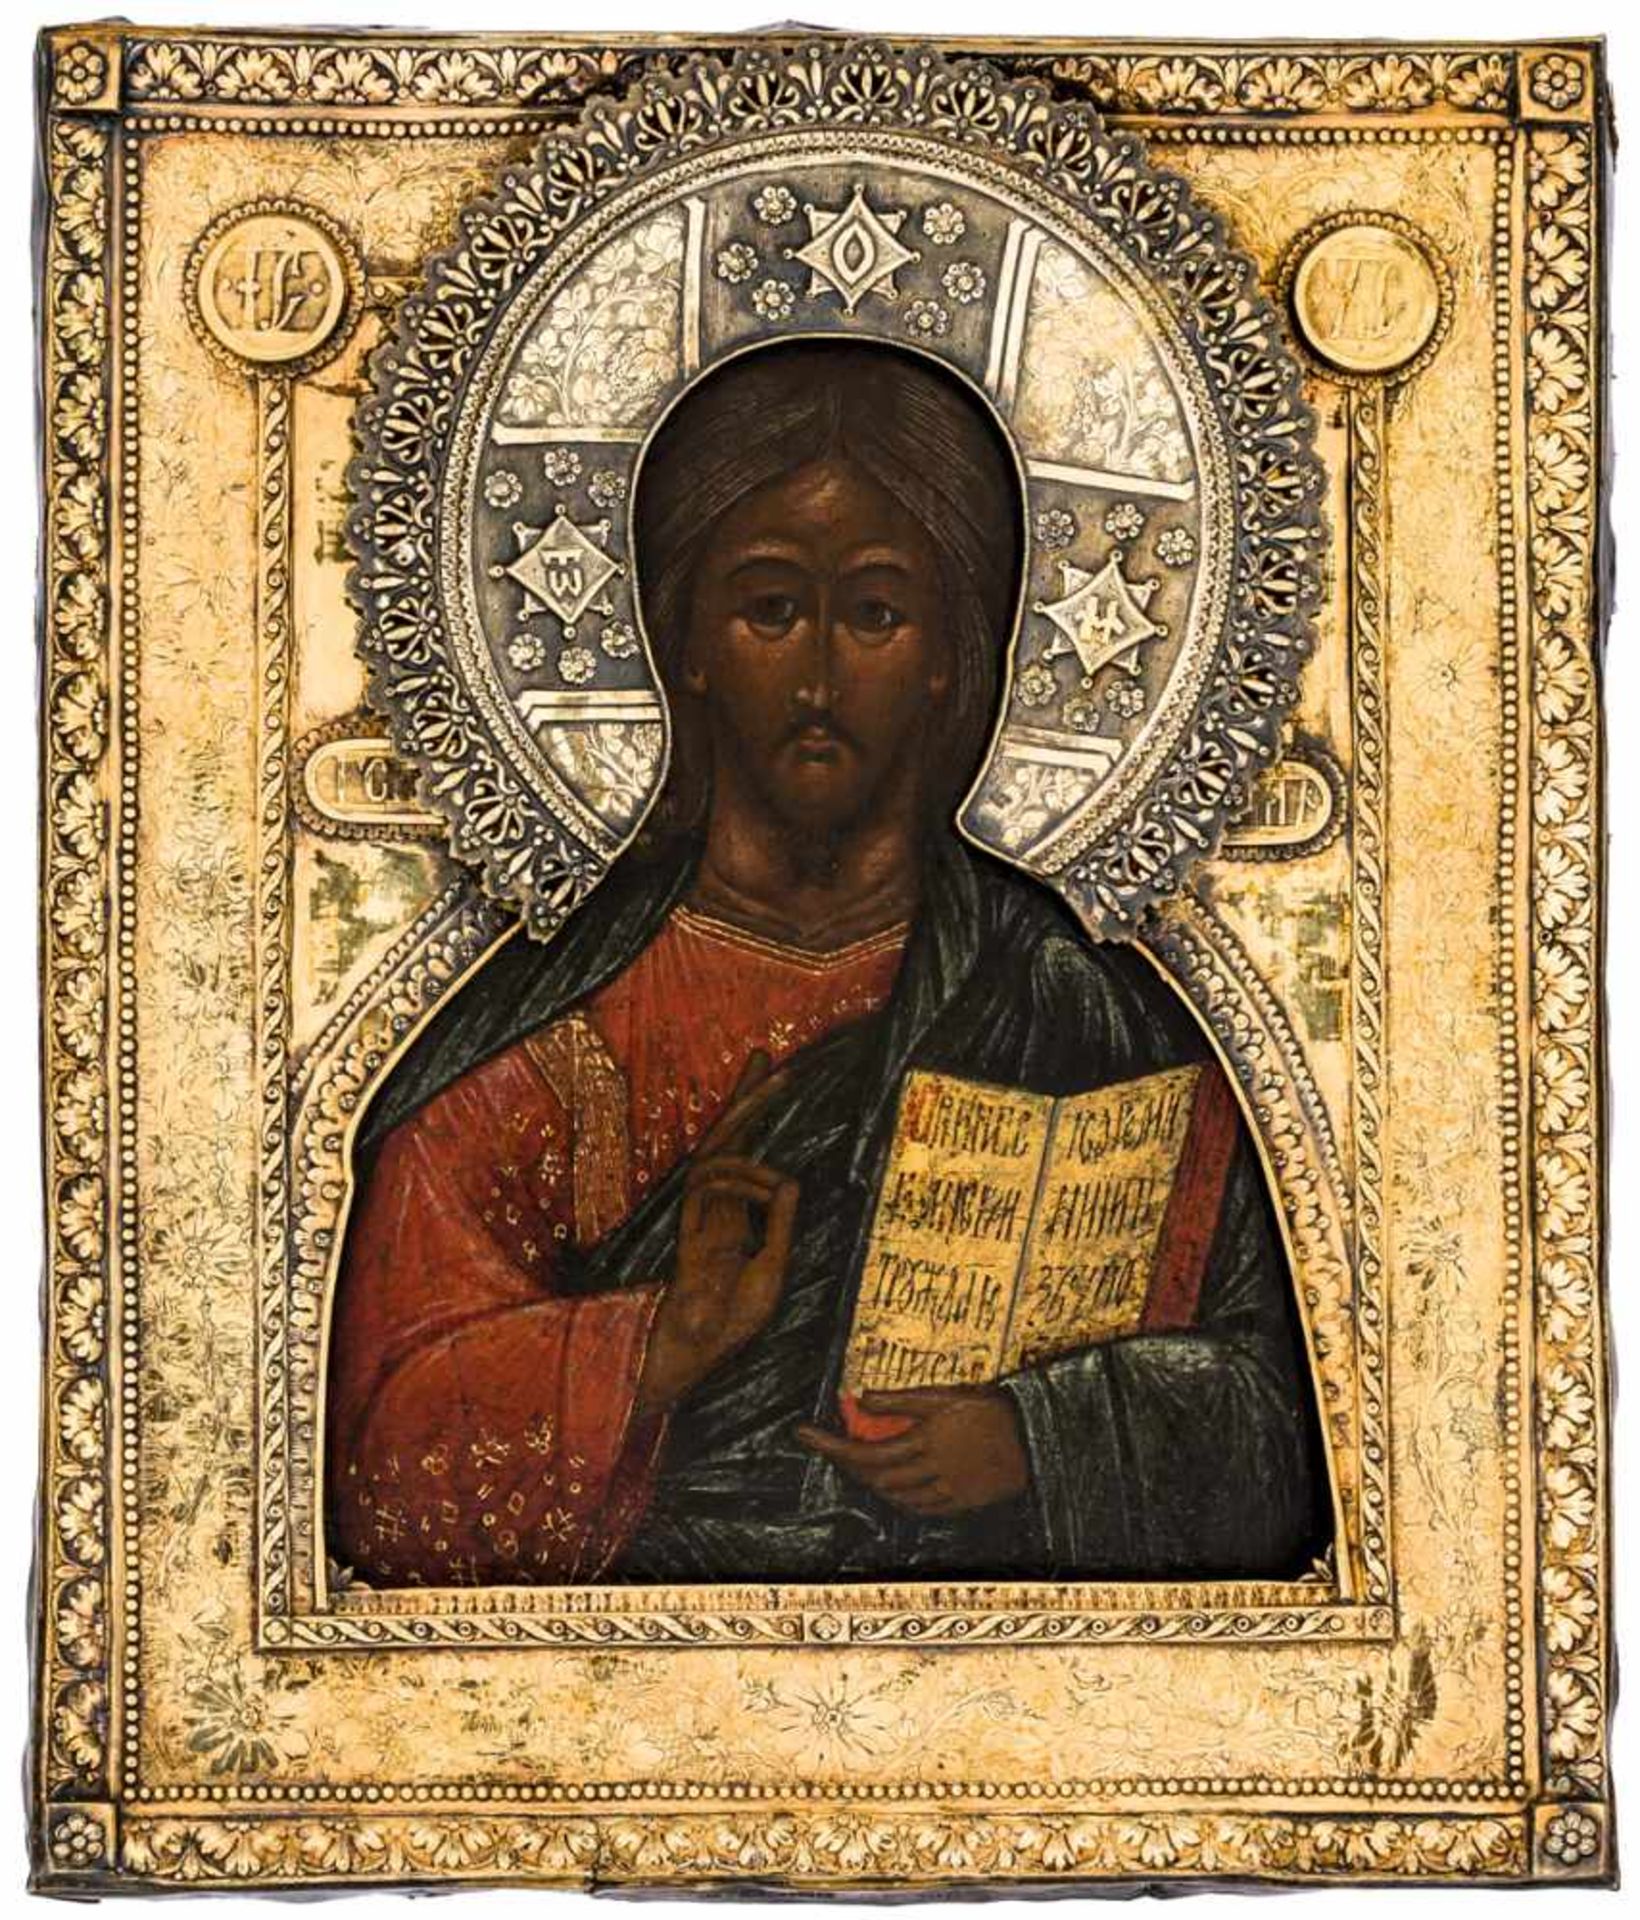 Christus Pantokrator Russische Ikone, 18. Jh., mit Silberoklad (456g), Kostroma 1863 Beschaumeister: